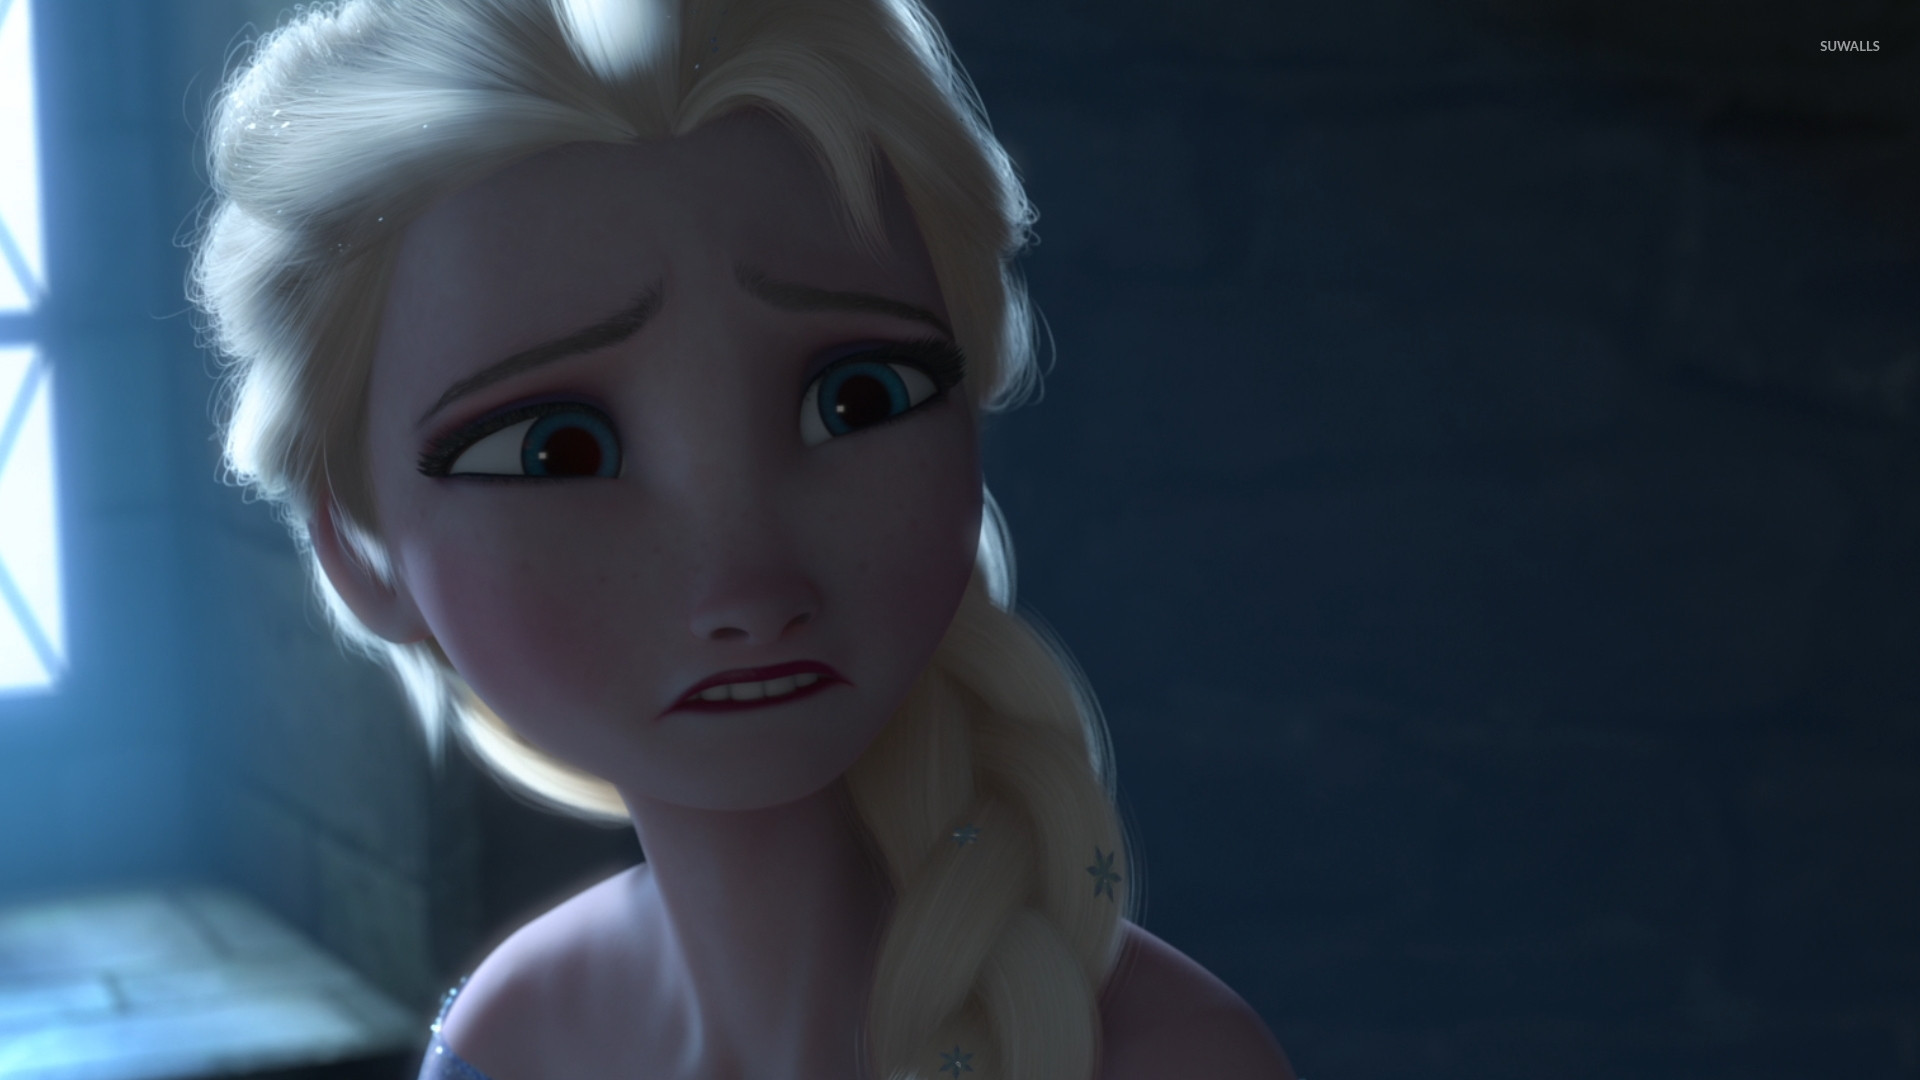 Frozen [9] Wallpaper - เจ้า หญิง ดิสนีย์ ร้องไห้ , HD Wallpaper & Backgrounds